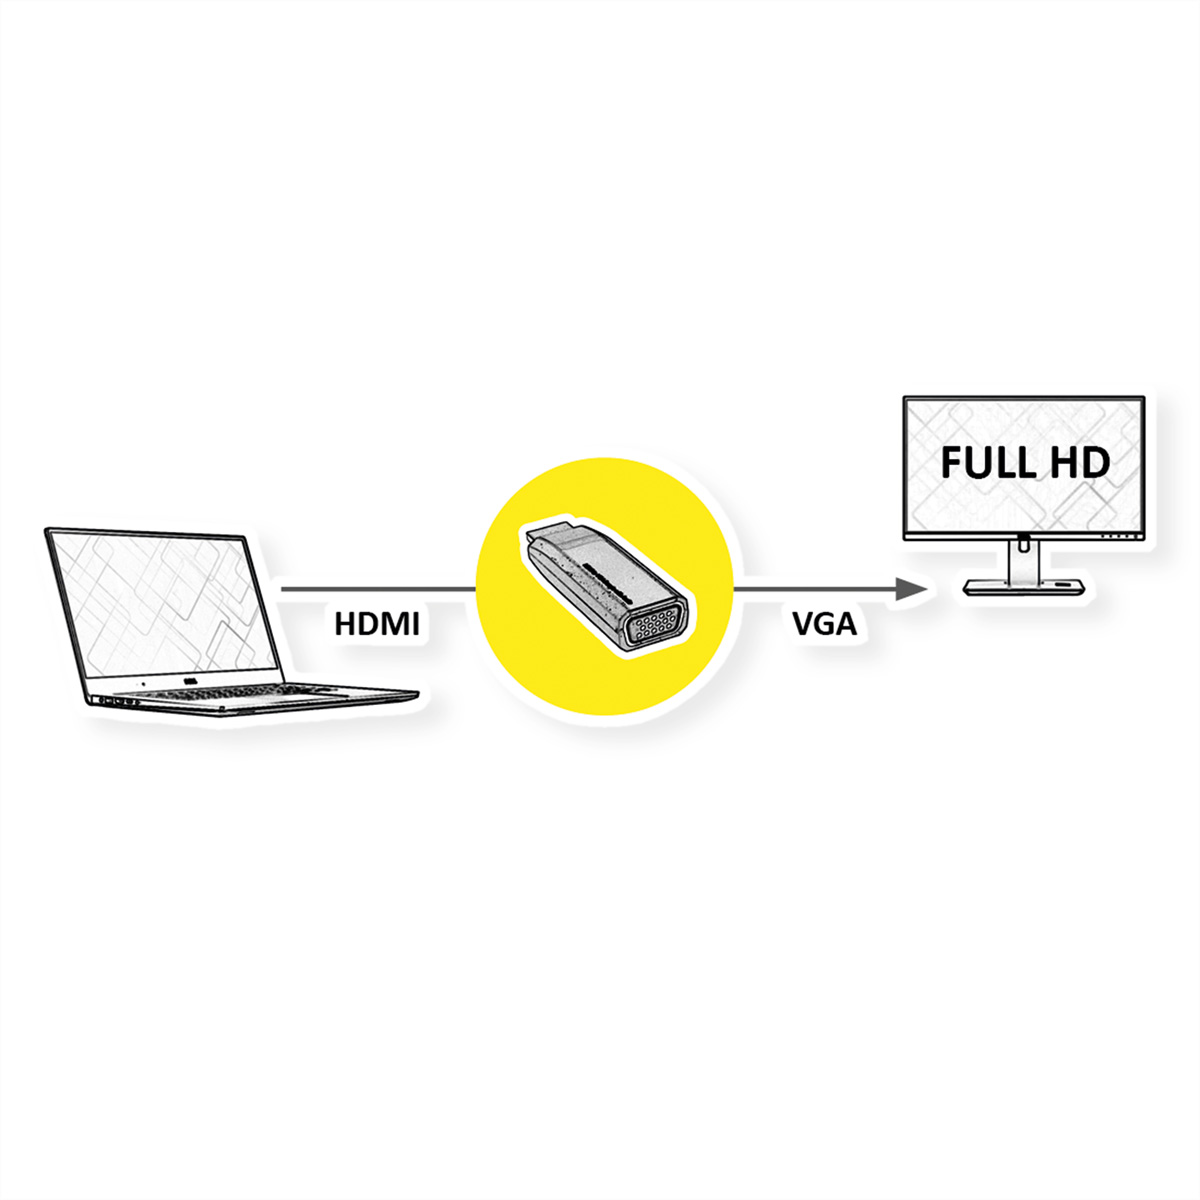 BU VGA HDMI-VGA HDMI VALUE / ST Adapter Adapter, HDMI-VGA